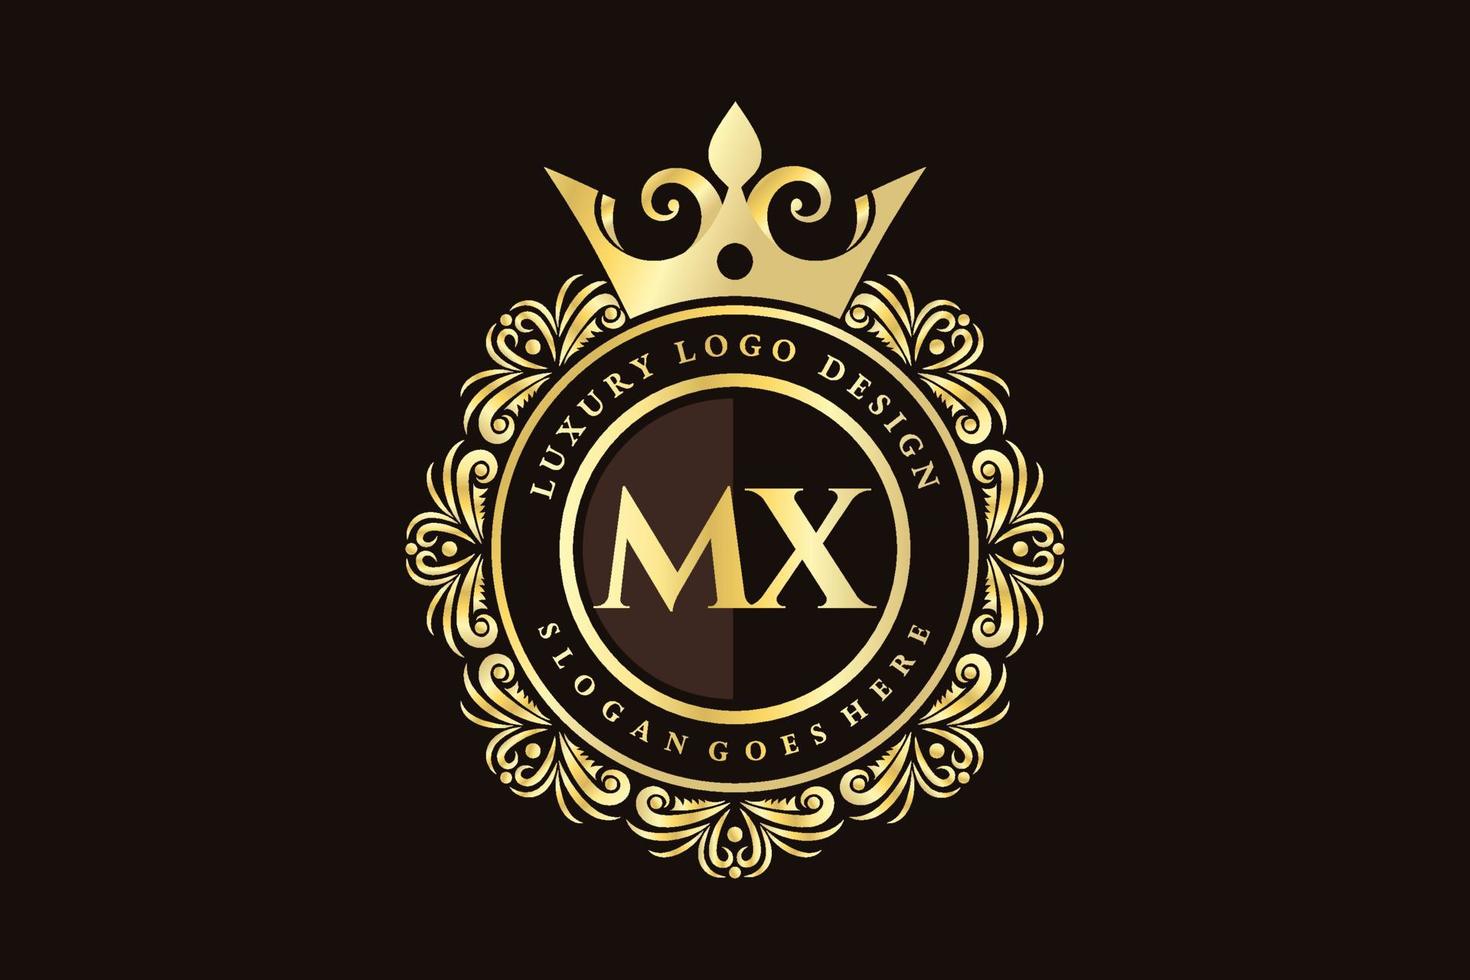 mx eerste brief goud kalligrafische vrouwelijk bloemen hand- getrokken heraldisch monogram antiek wijnoogst stijl luxe logo ontwerp premie vector